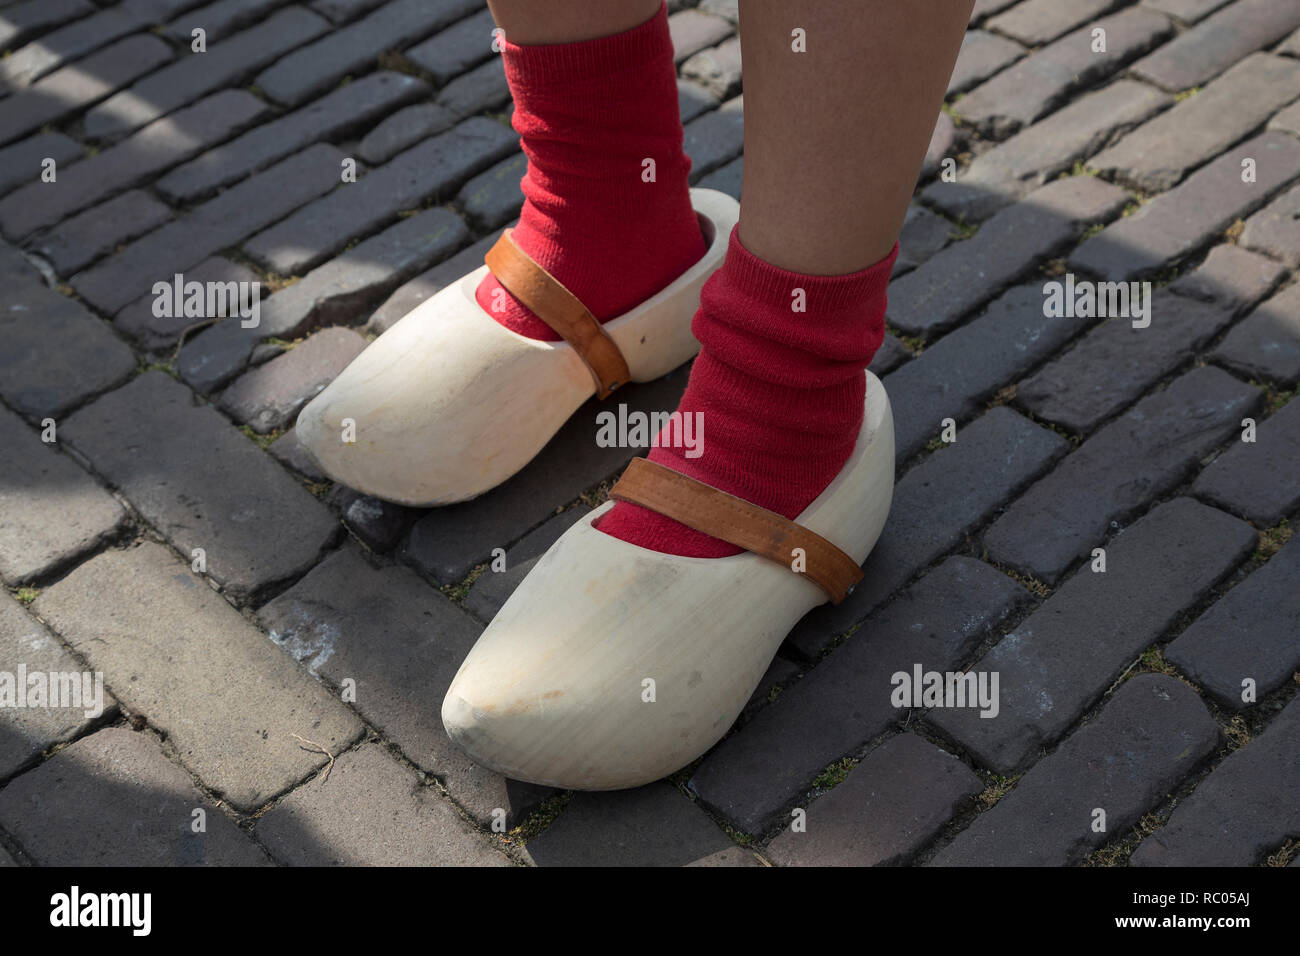 Holandés clásico zapatos de madera desgastada por una chica con calcetines rojos Foto de stock